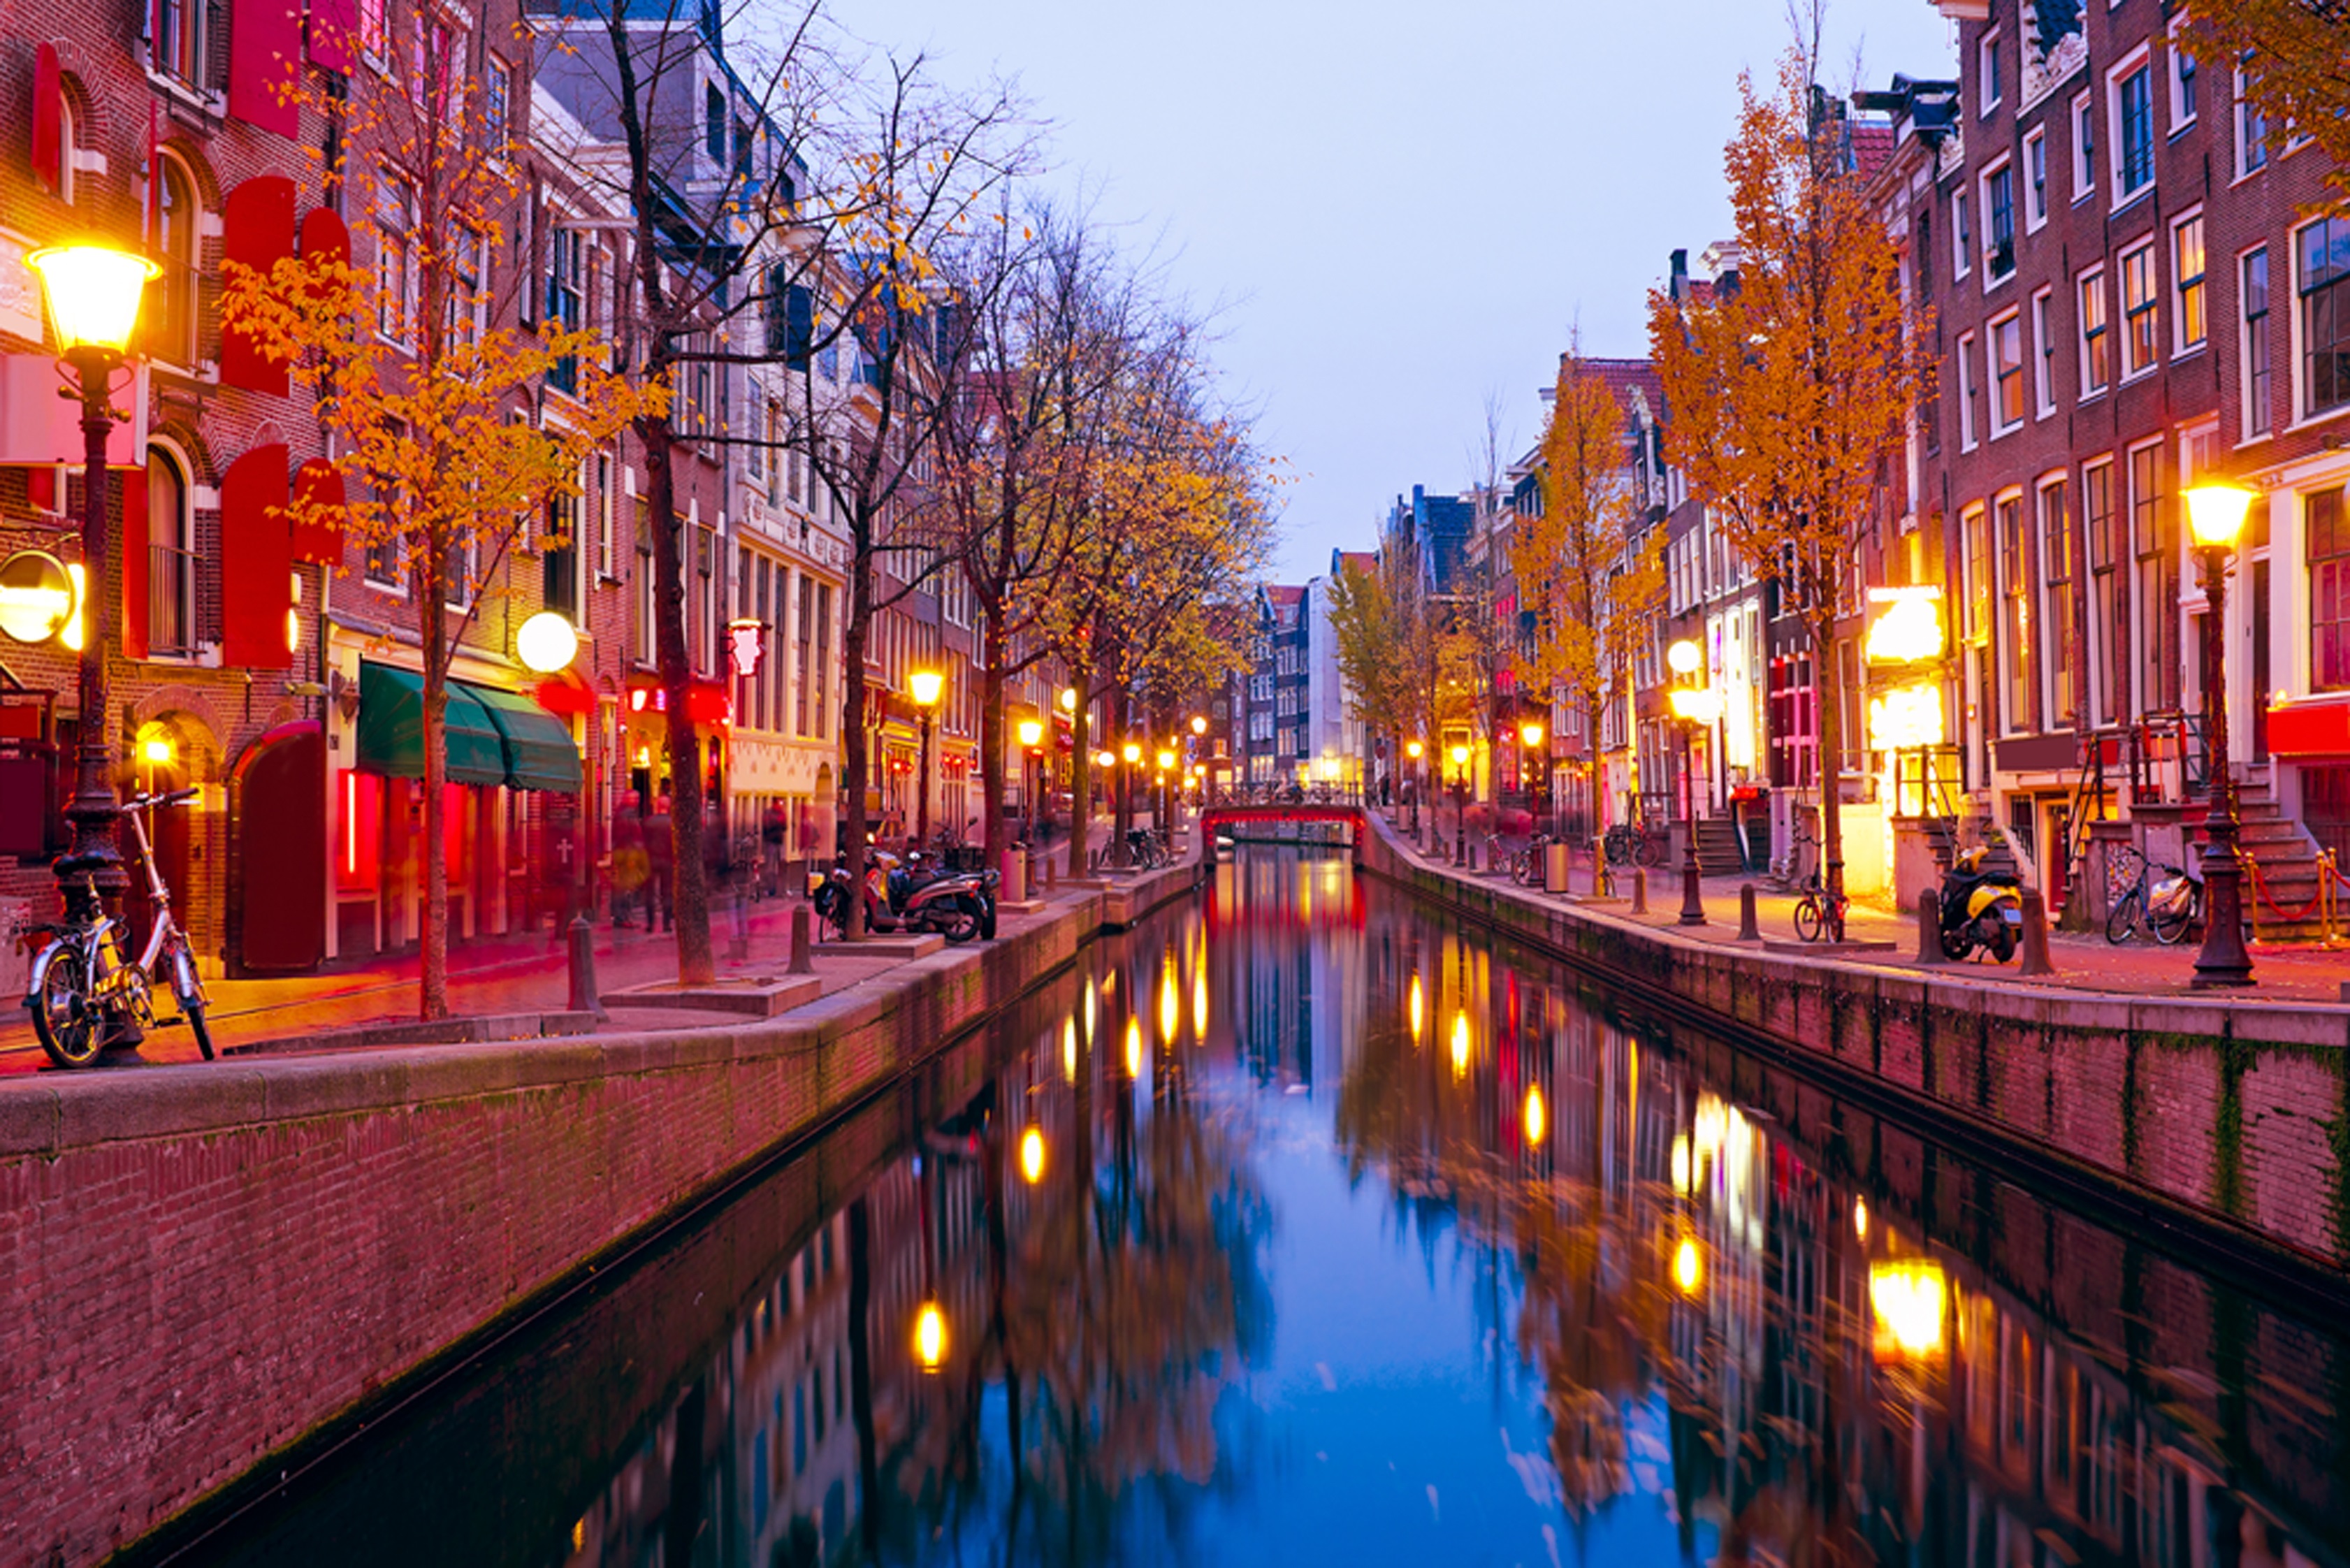 Амстердам, чист, спокоен, подреден. Пълен с цветя, колела.На всеки би му се приискало да посети този град.<br />
Големият художник Рембранд твори тук, а Ане Франк, малката писателка, е родена. Градът е столица на Кралство Нидерландия (Холандия). Името на Амстердам идва от Амстелердам. В превод означава "бент на Амстел", реката, преминаваща през града. Възникнал като рибарско селце в края на XII век, в резултат на развитието на търговията. Амстердам се превръща в един от най-големите пристанищни градове в света.През XIX и XX в. Амстердам се разраства и се образуват множество нови квартали и предградия. Кварталът на Червените фенери съществува на днешното си място от самото му основаване през XIV в., когато вместо кафенета, тук са се разполагали дестилационни фабрики, обслужвани предимно от моряци и търговци от различни националности.Нуждаещите се от освежаване и компания и забогатели след дългите пътувания моряци, все по-силно привличат вниманието на жените с лоша репутация. Така за кратко време луксозните публични домове, ръководени от амбициозни бизнес дами се превръщат в едни от най-популярните места .Оставяйки малка пролука между червените завеси на стаите, гледащи към улиците, дамите подканят мъжете с леко, но предизвикателно потропване по прозорците.